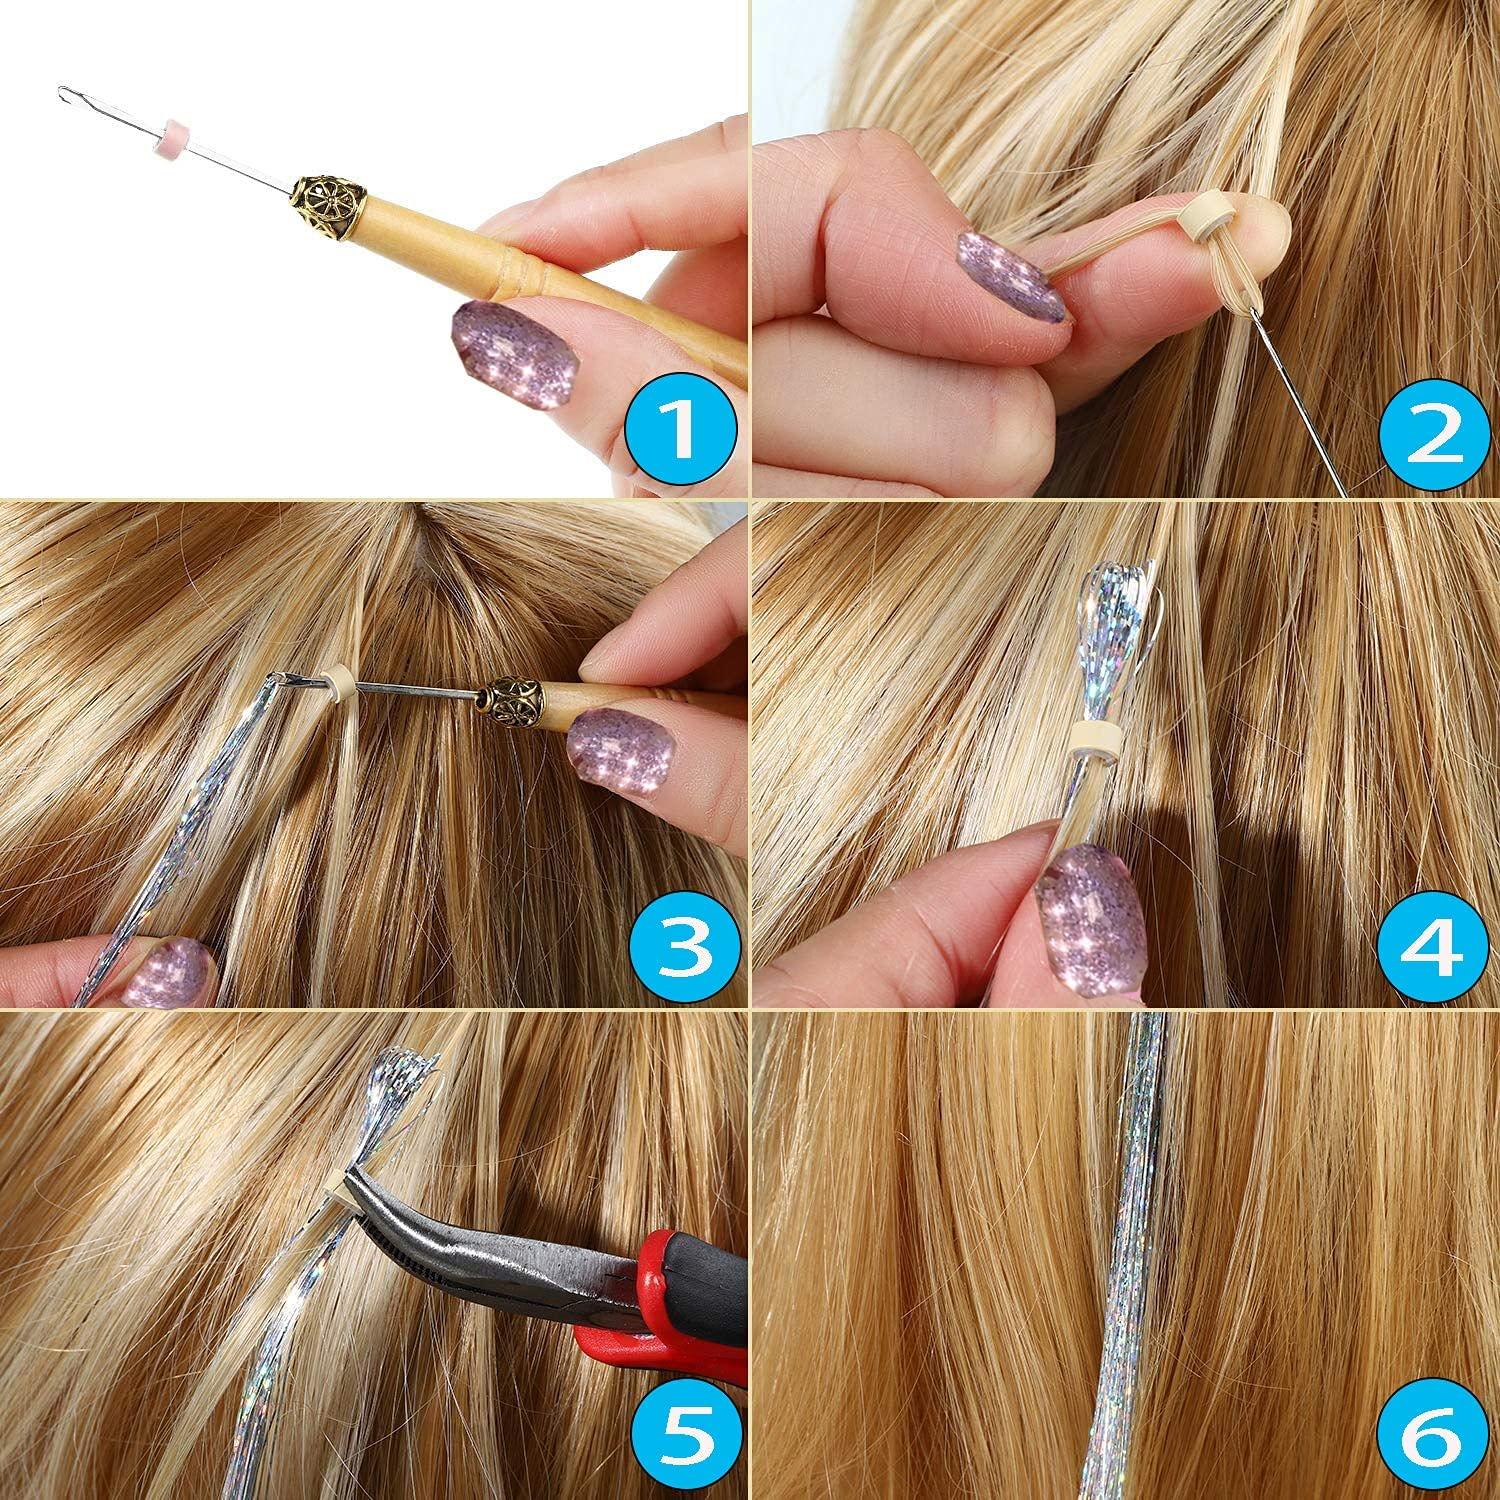  Hair Tinsel Strands Kit, Tinsel Hair Extensions